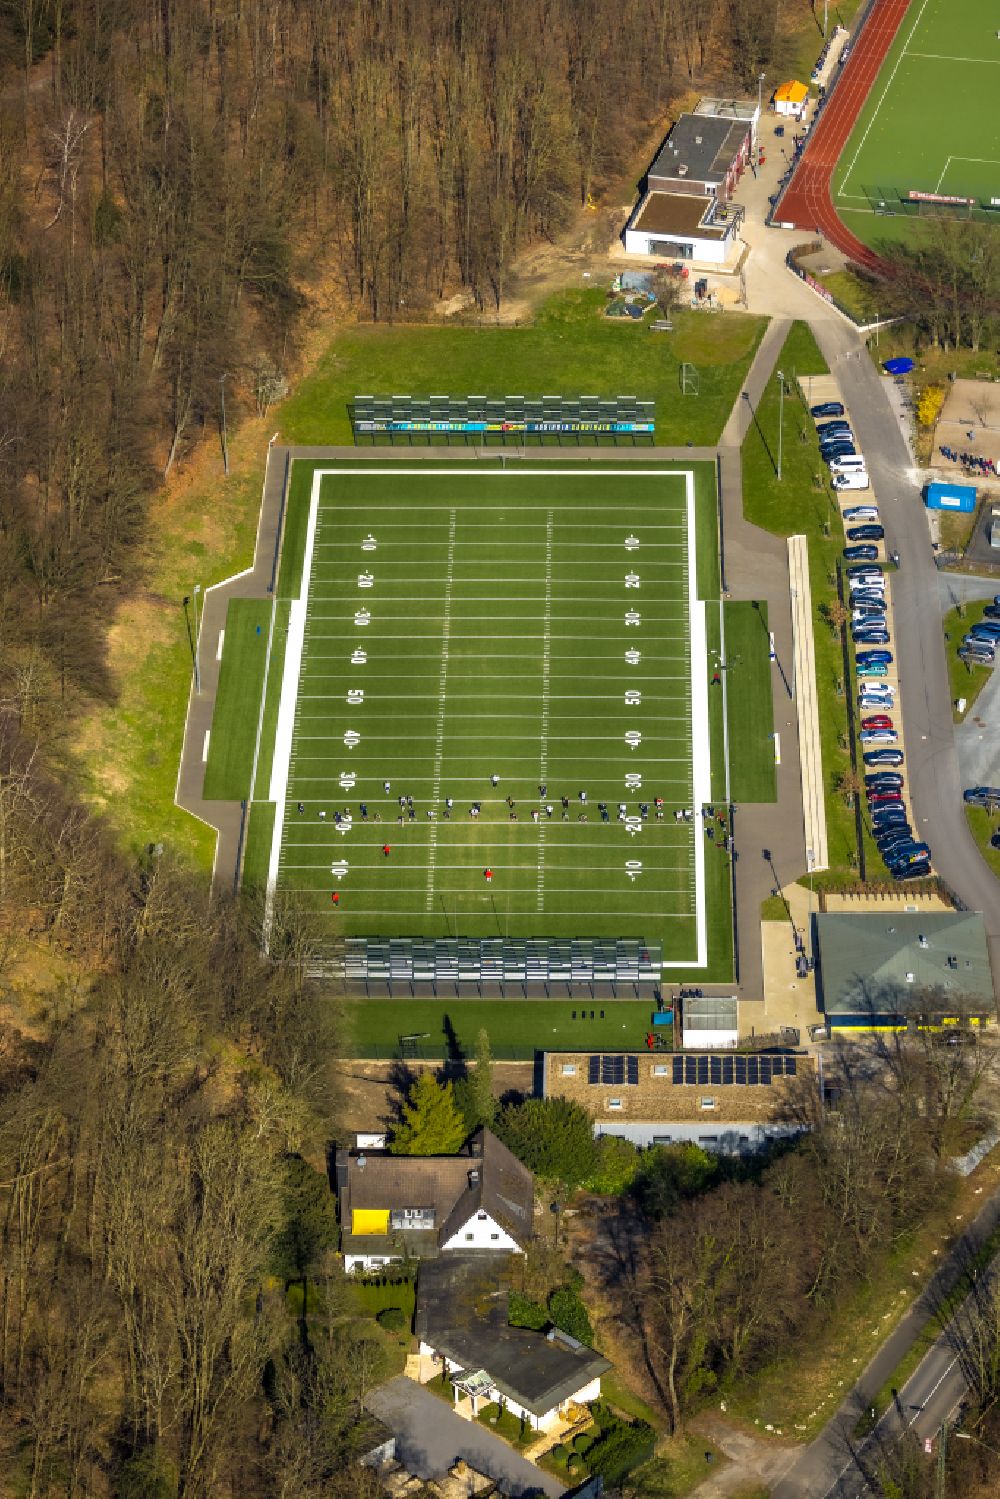 Luftbild Kettwig - American Football- Platz des Fußball-Sport-Verein Kettwig e.V. in Kettwig im Bundesland Nordrhein-Westfalen, Deutschland